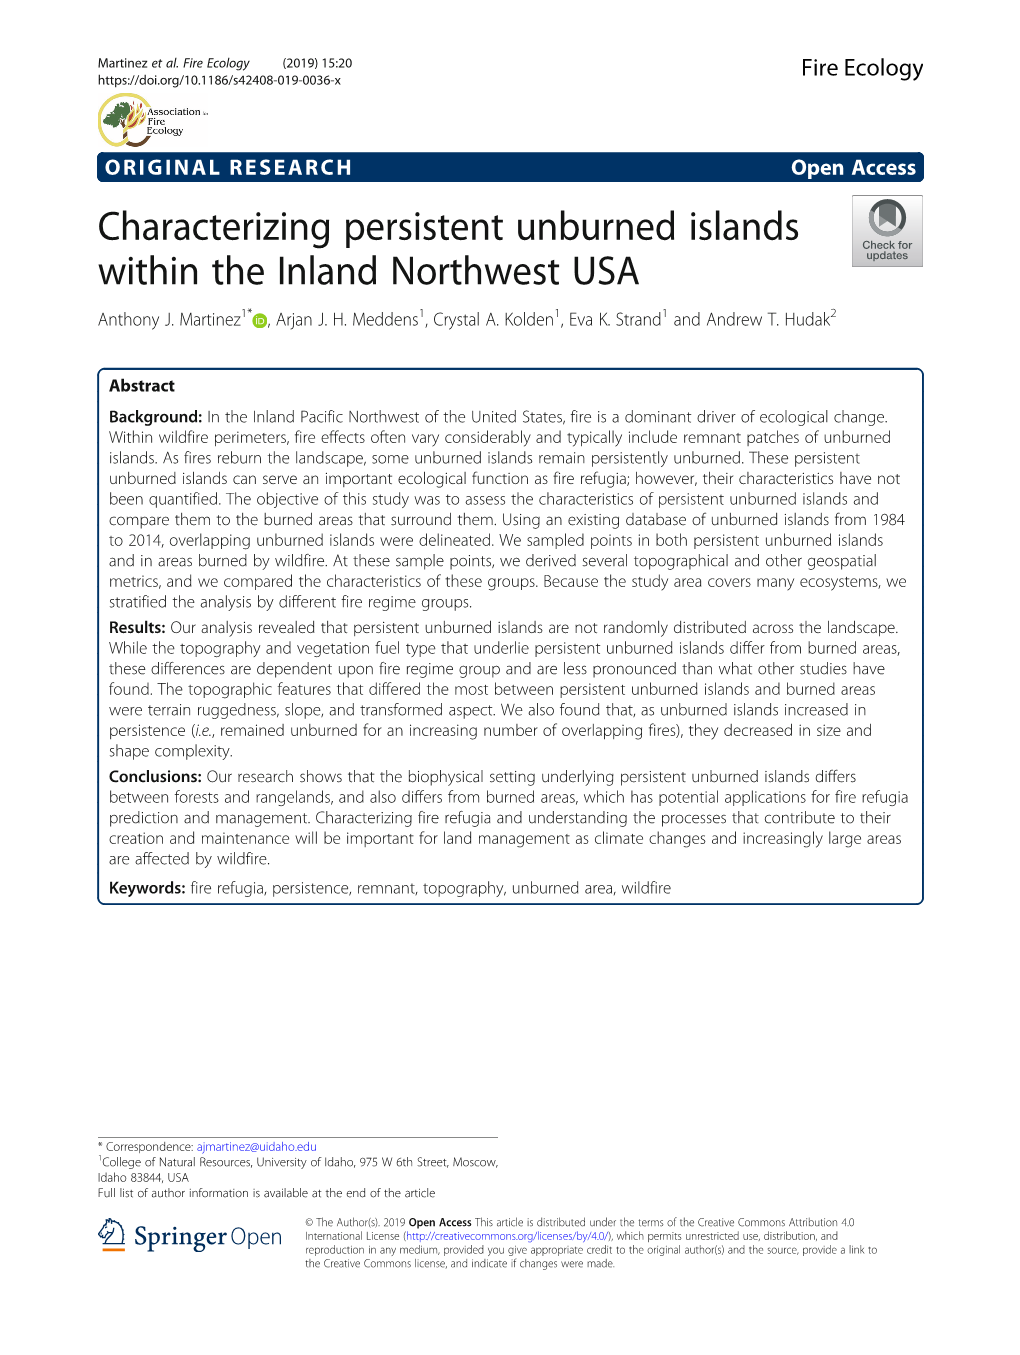 Characterizing Persistent Unburned Islands Within the Inland Northwest USA Anthony J